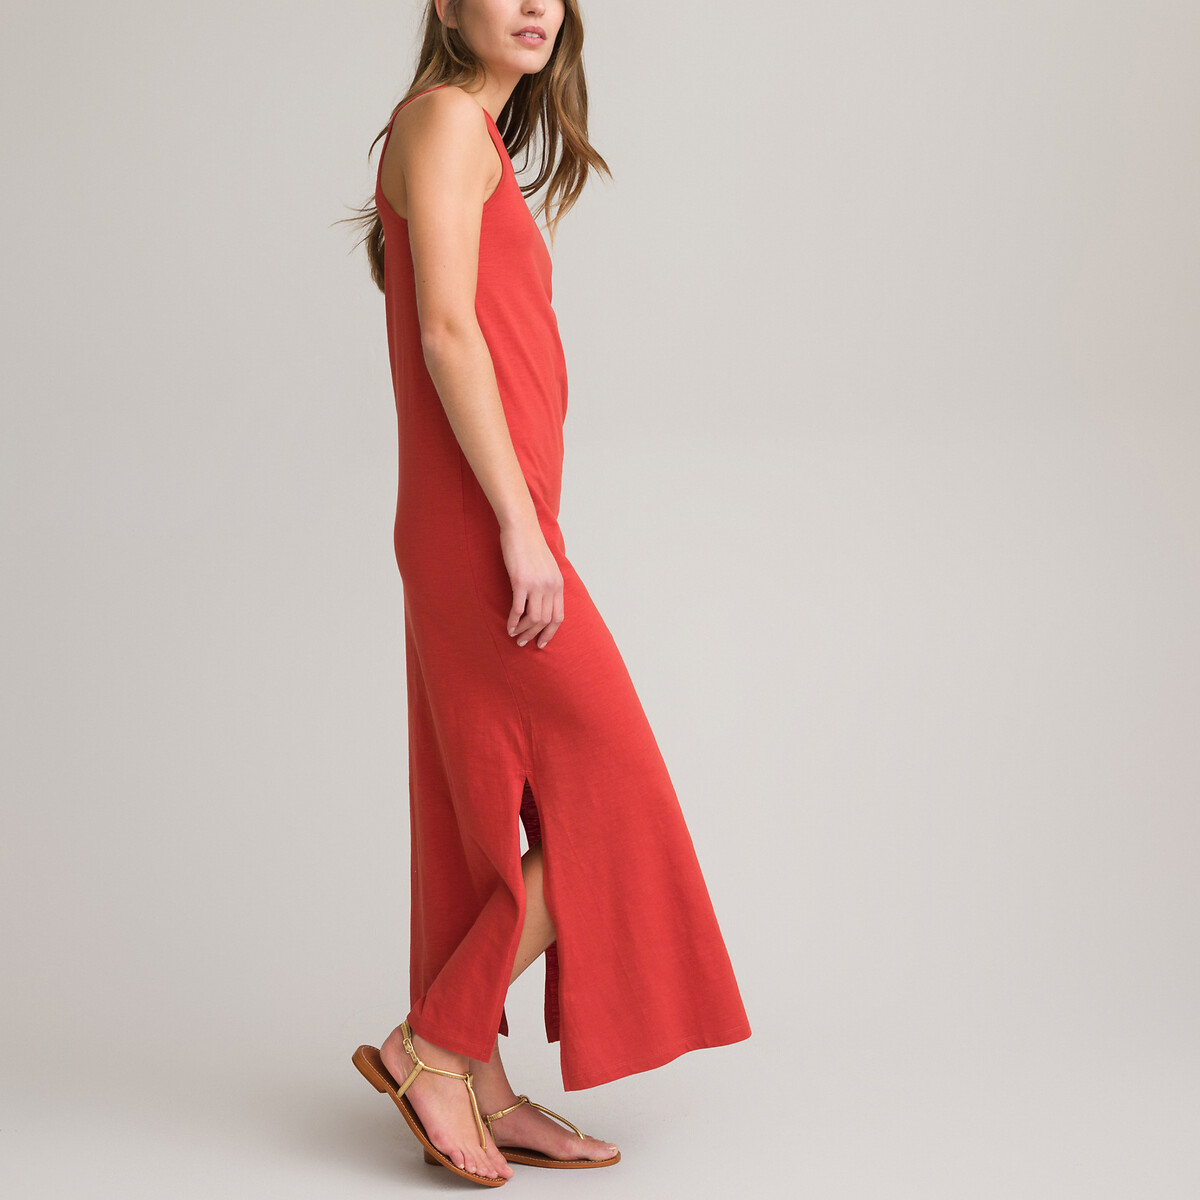 Платье Длинное без рукавов из трикотажа 100 хлопок XL красный LaRedoute, размер XL - фото 2